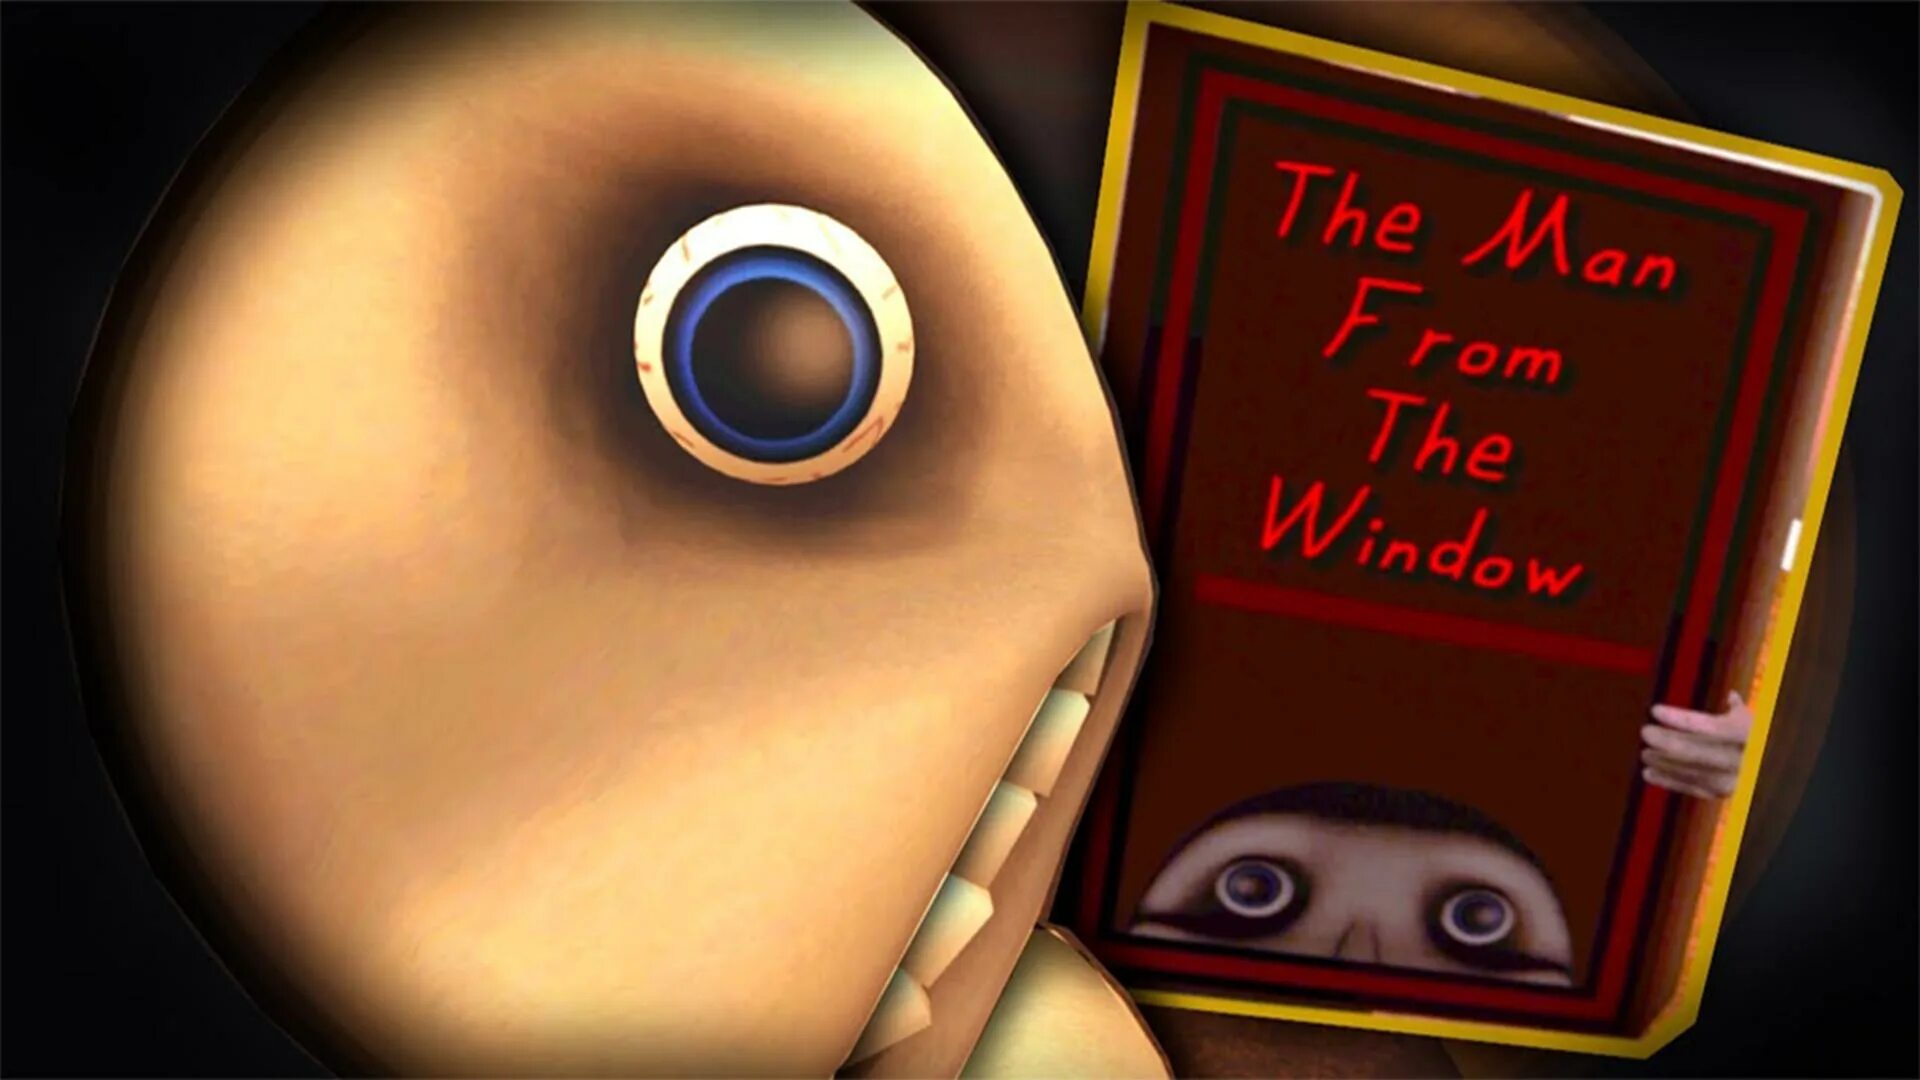 Включи игру за окном. Человек за окном игра. The man from the Window игра хоррор. Человек за окном из игры. Человек за окном картинки из игры.